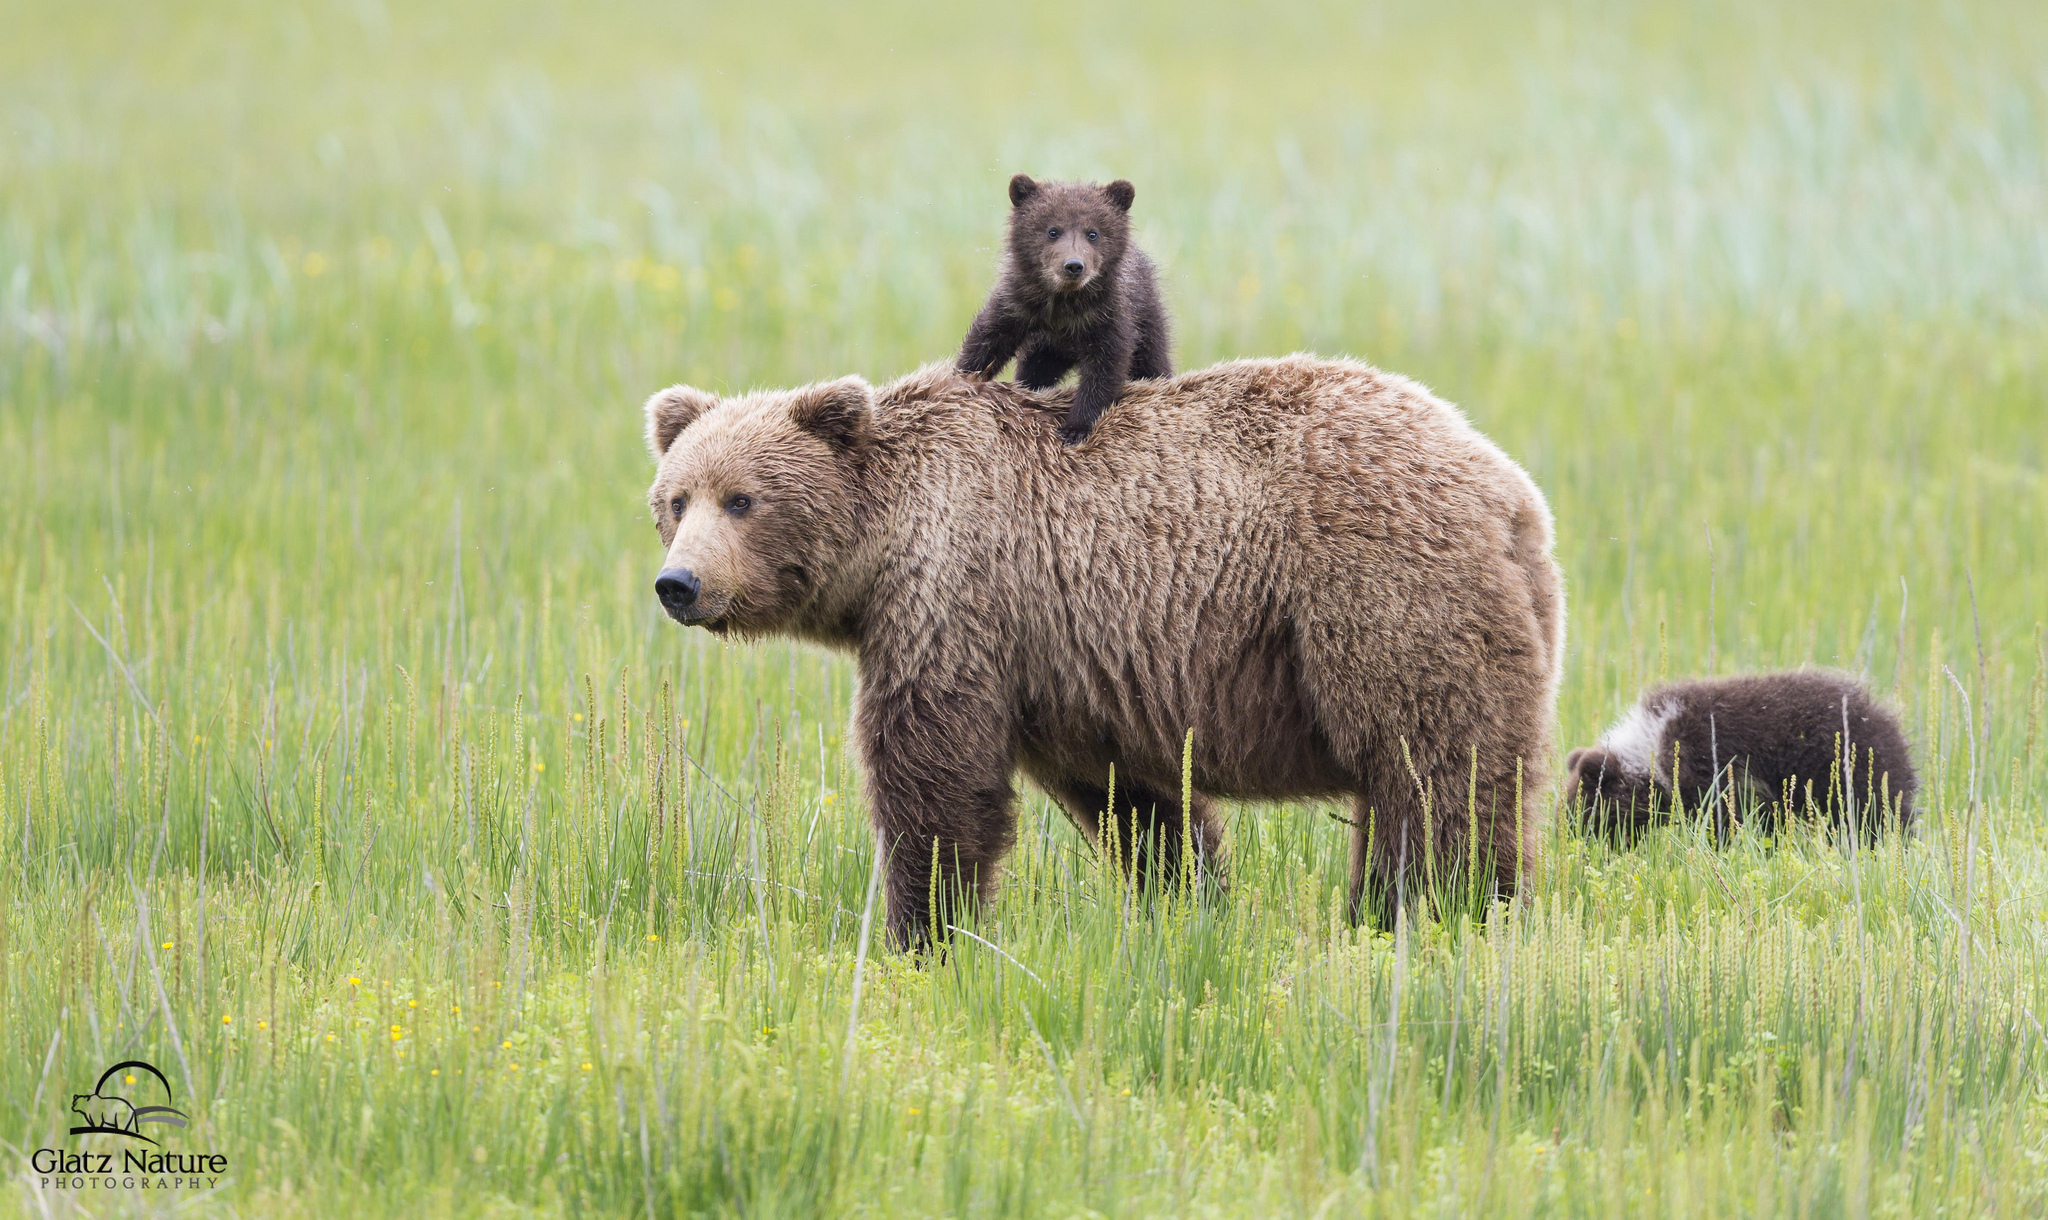 Скачать обои бесплатно Животные, Медведи, Медведь, Детеныш, Луга, Аляска картинка на рабочий стол ПК